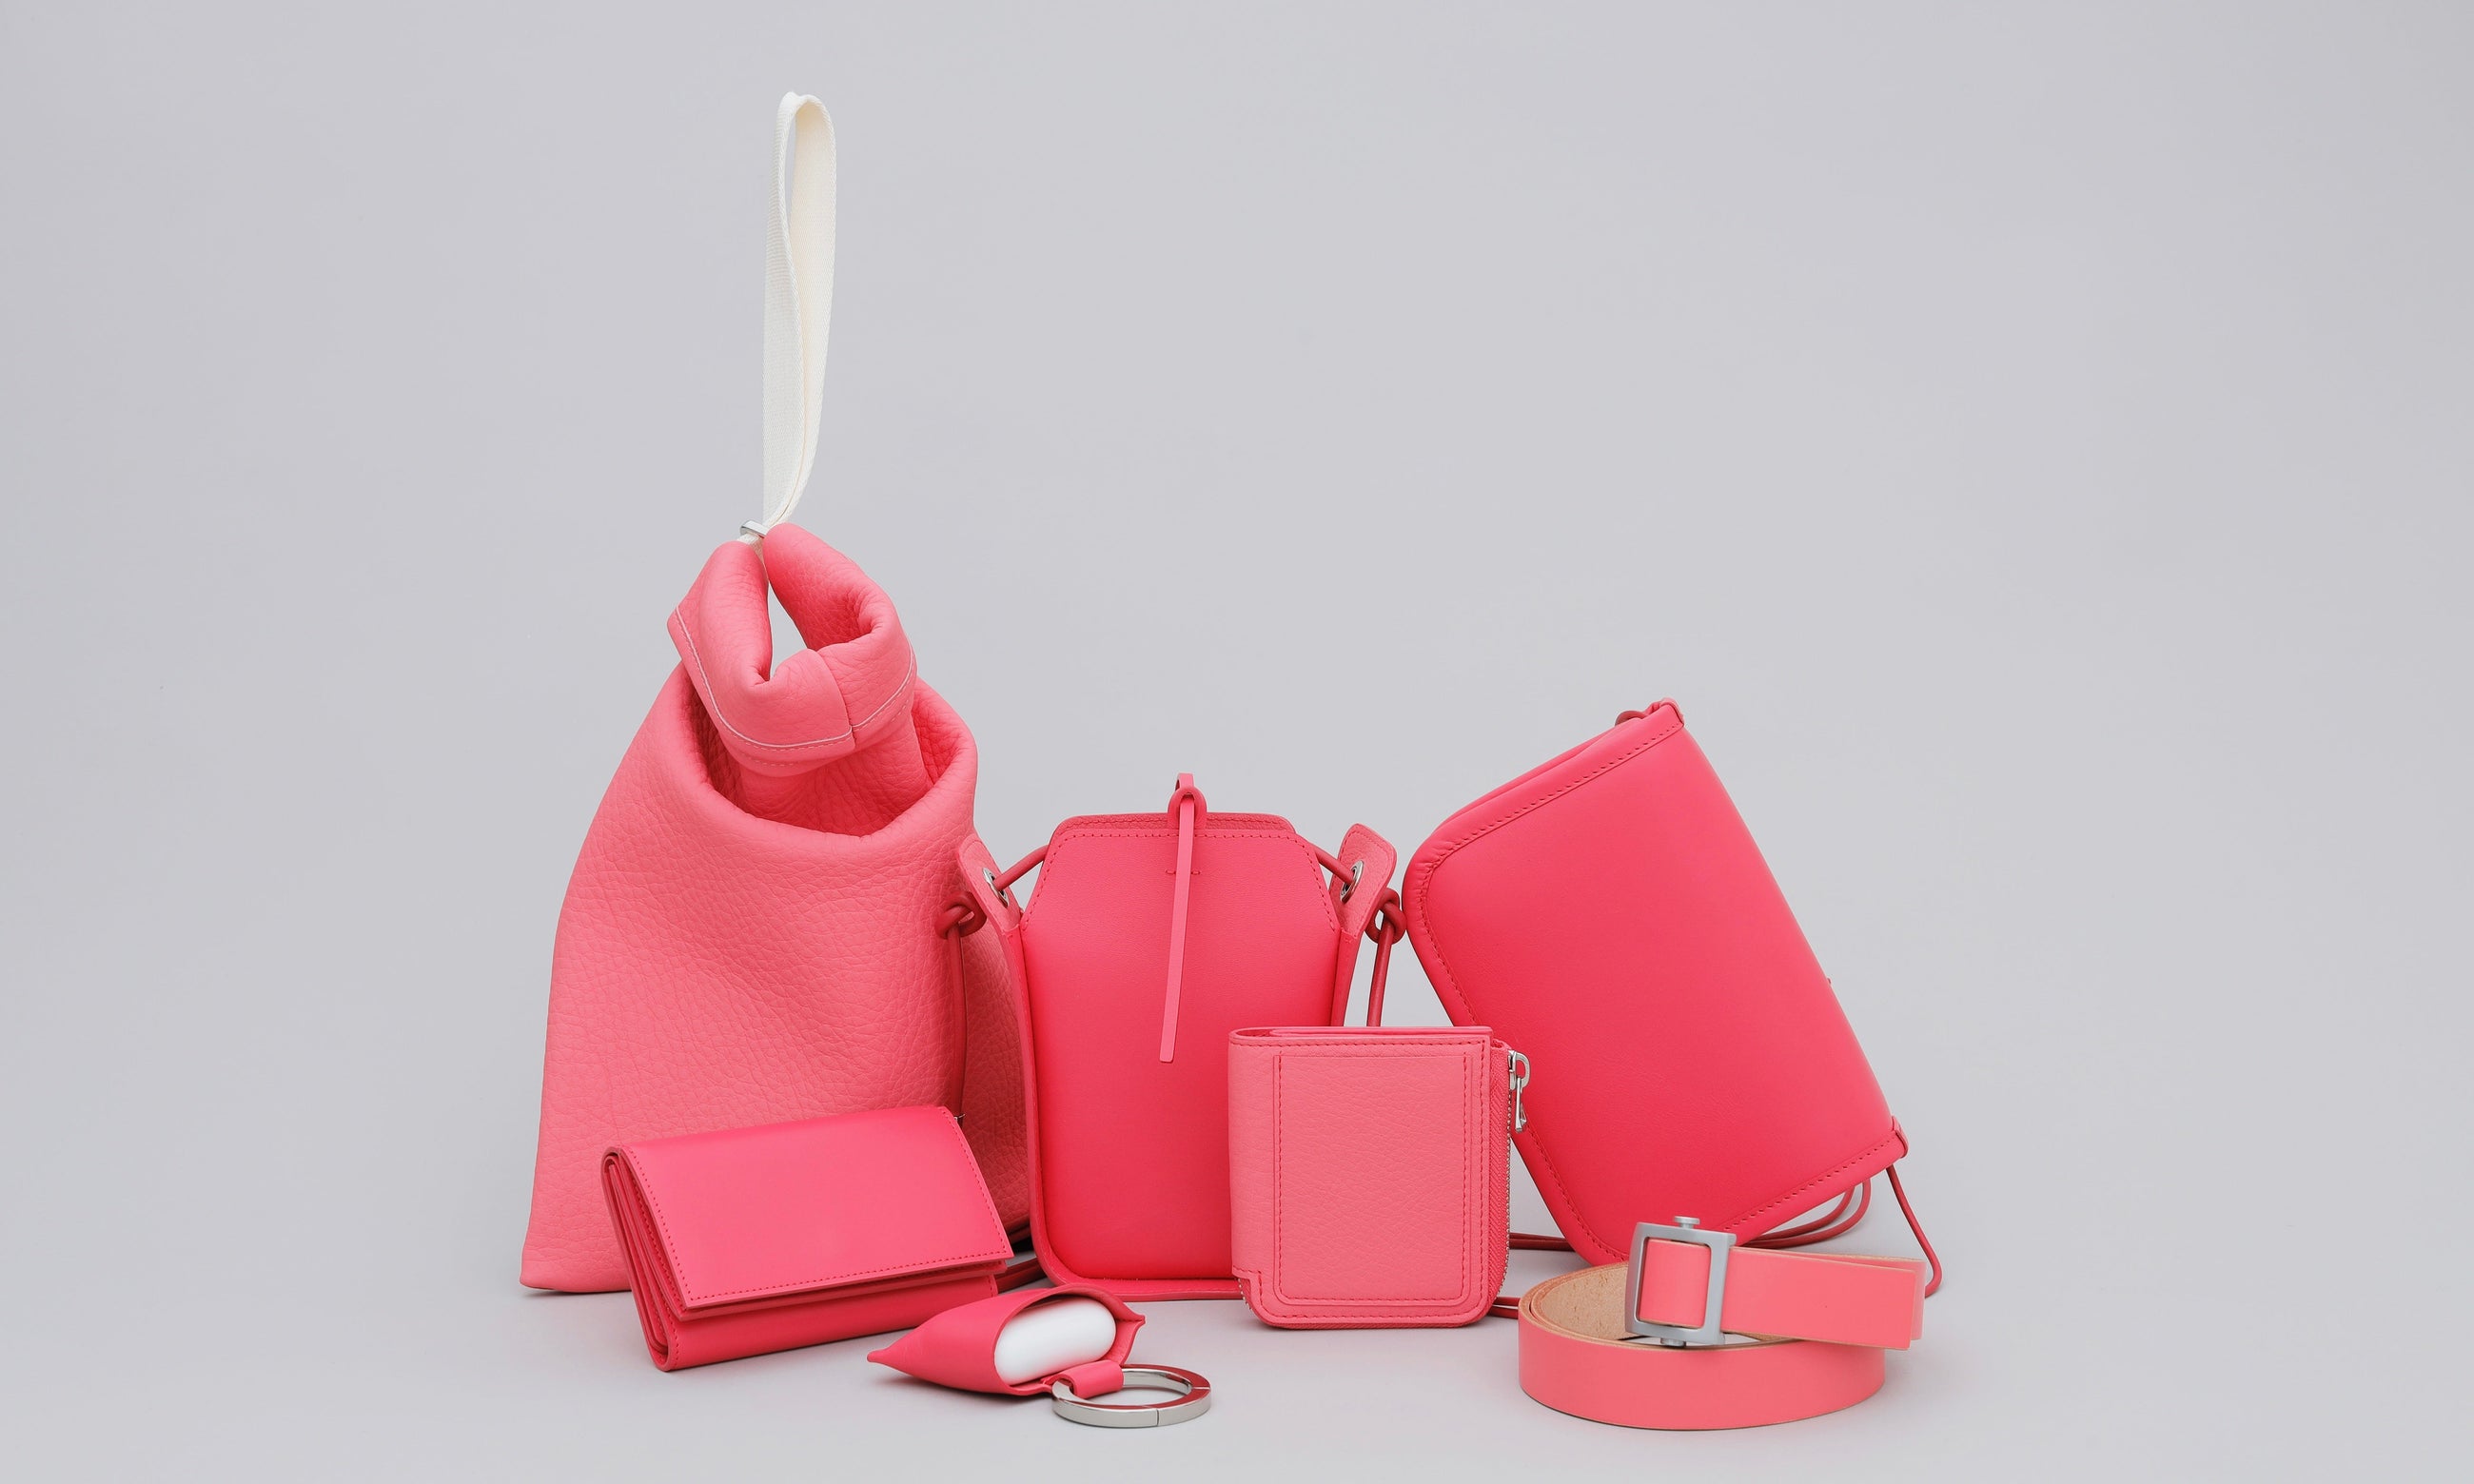 PINK (ピンク / 桃色 / 桜色 / 石竹色) | COLLECTION (コレクション / 商品一覧) - ITTI (イッチ) | レザーブランド 革小物 財布・サイフ・さいふ バッグ・カバン・鞄・かばん グッズ メンズ レディース